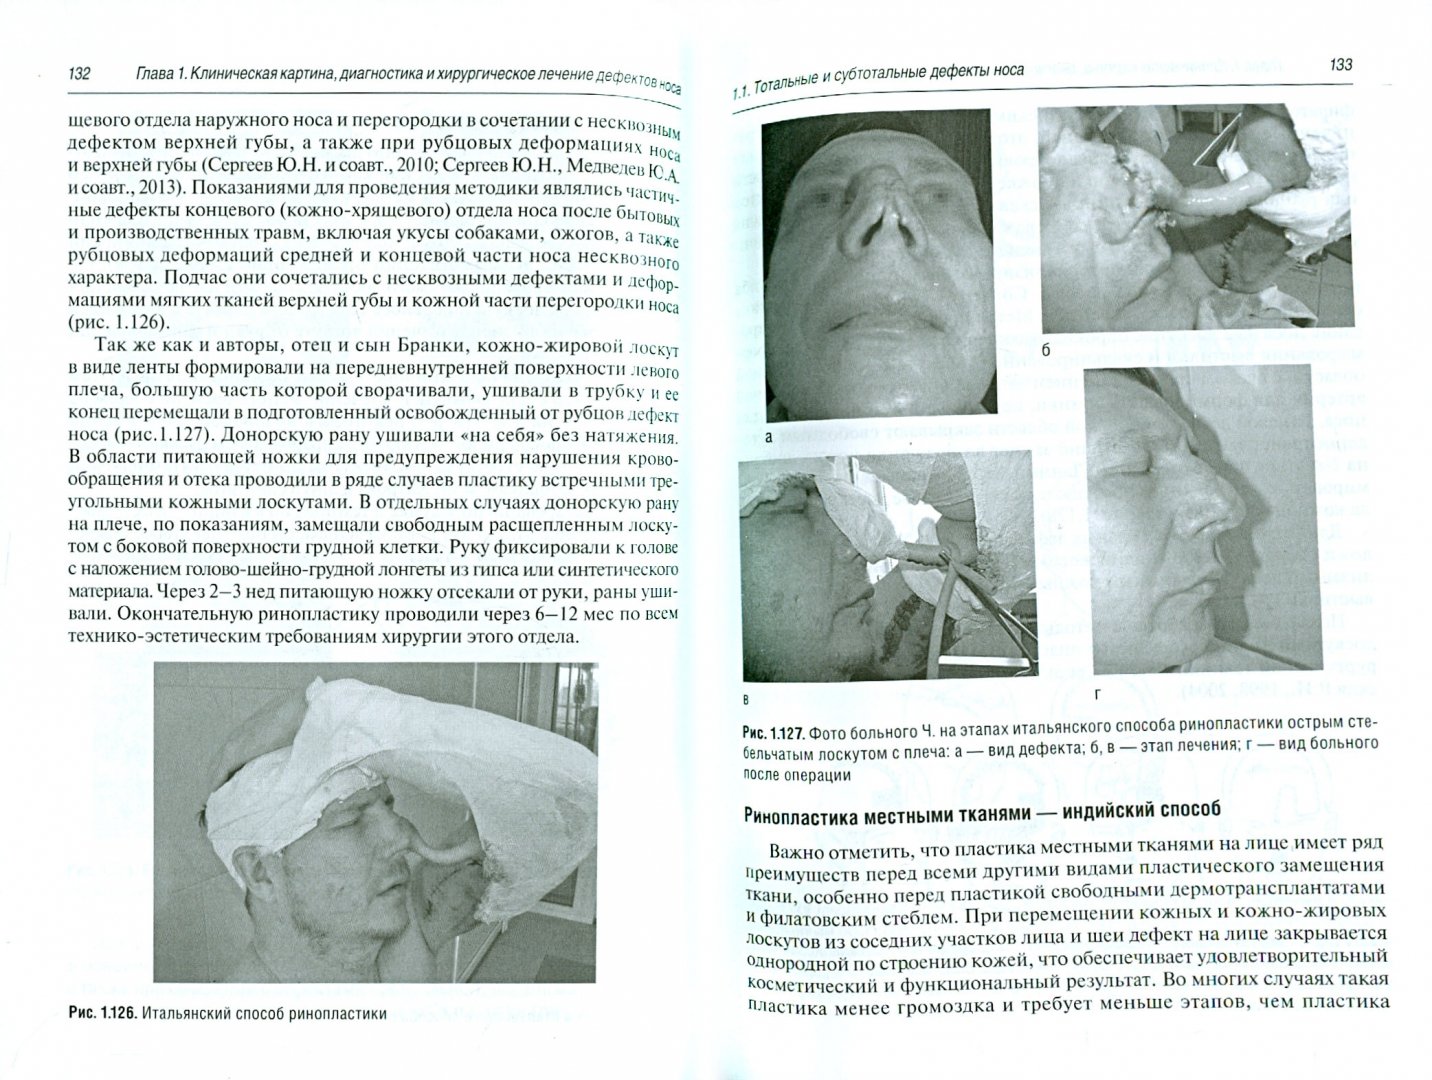 Иллюстрация 1 из 4 для Хирургическое лечение дефектов и деформаций носа - Эзрохин, Топольницкий, Сергеев | Лабиринт - книги. Источник: Лабиринт